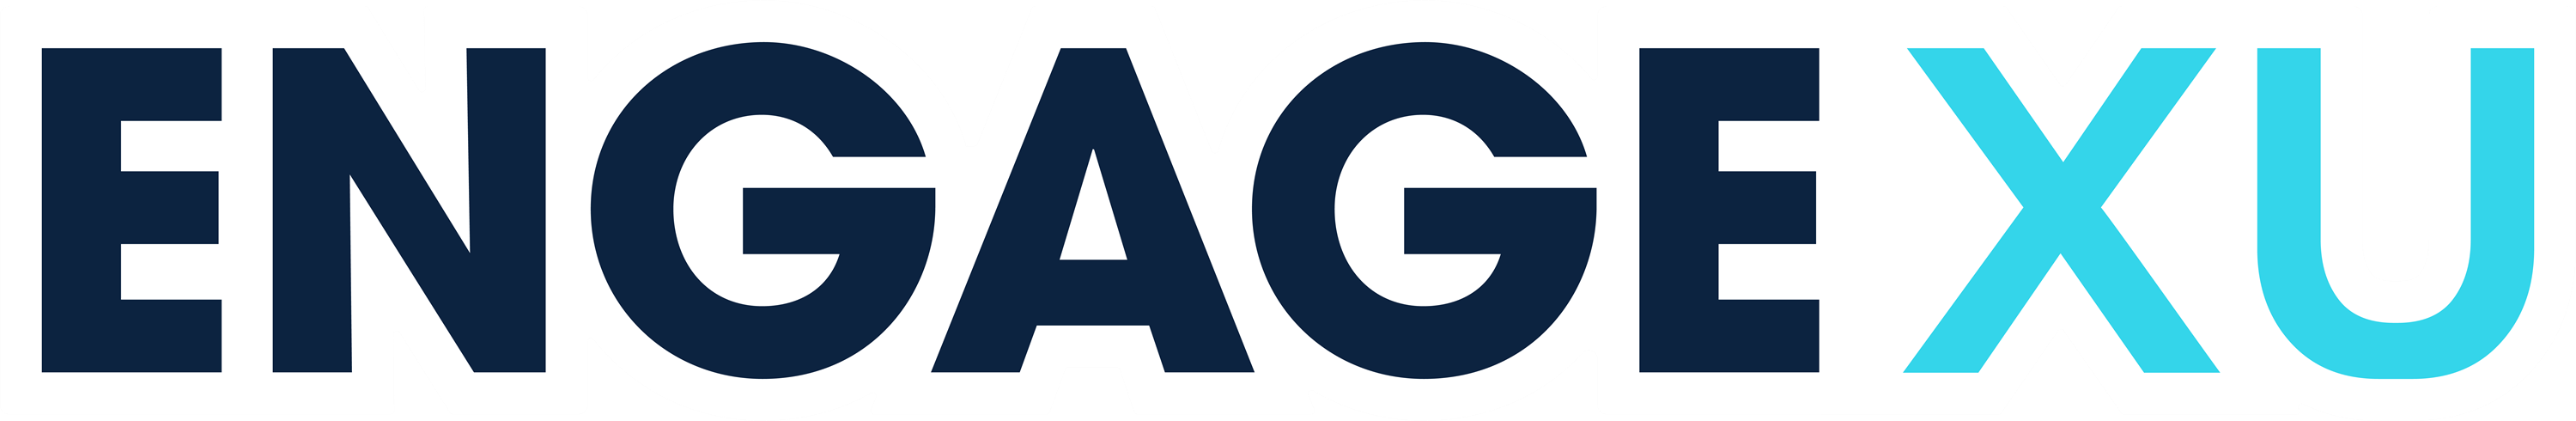 EngageXU Logo Image.